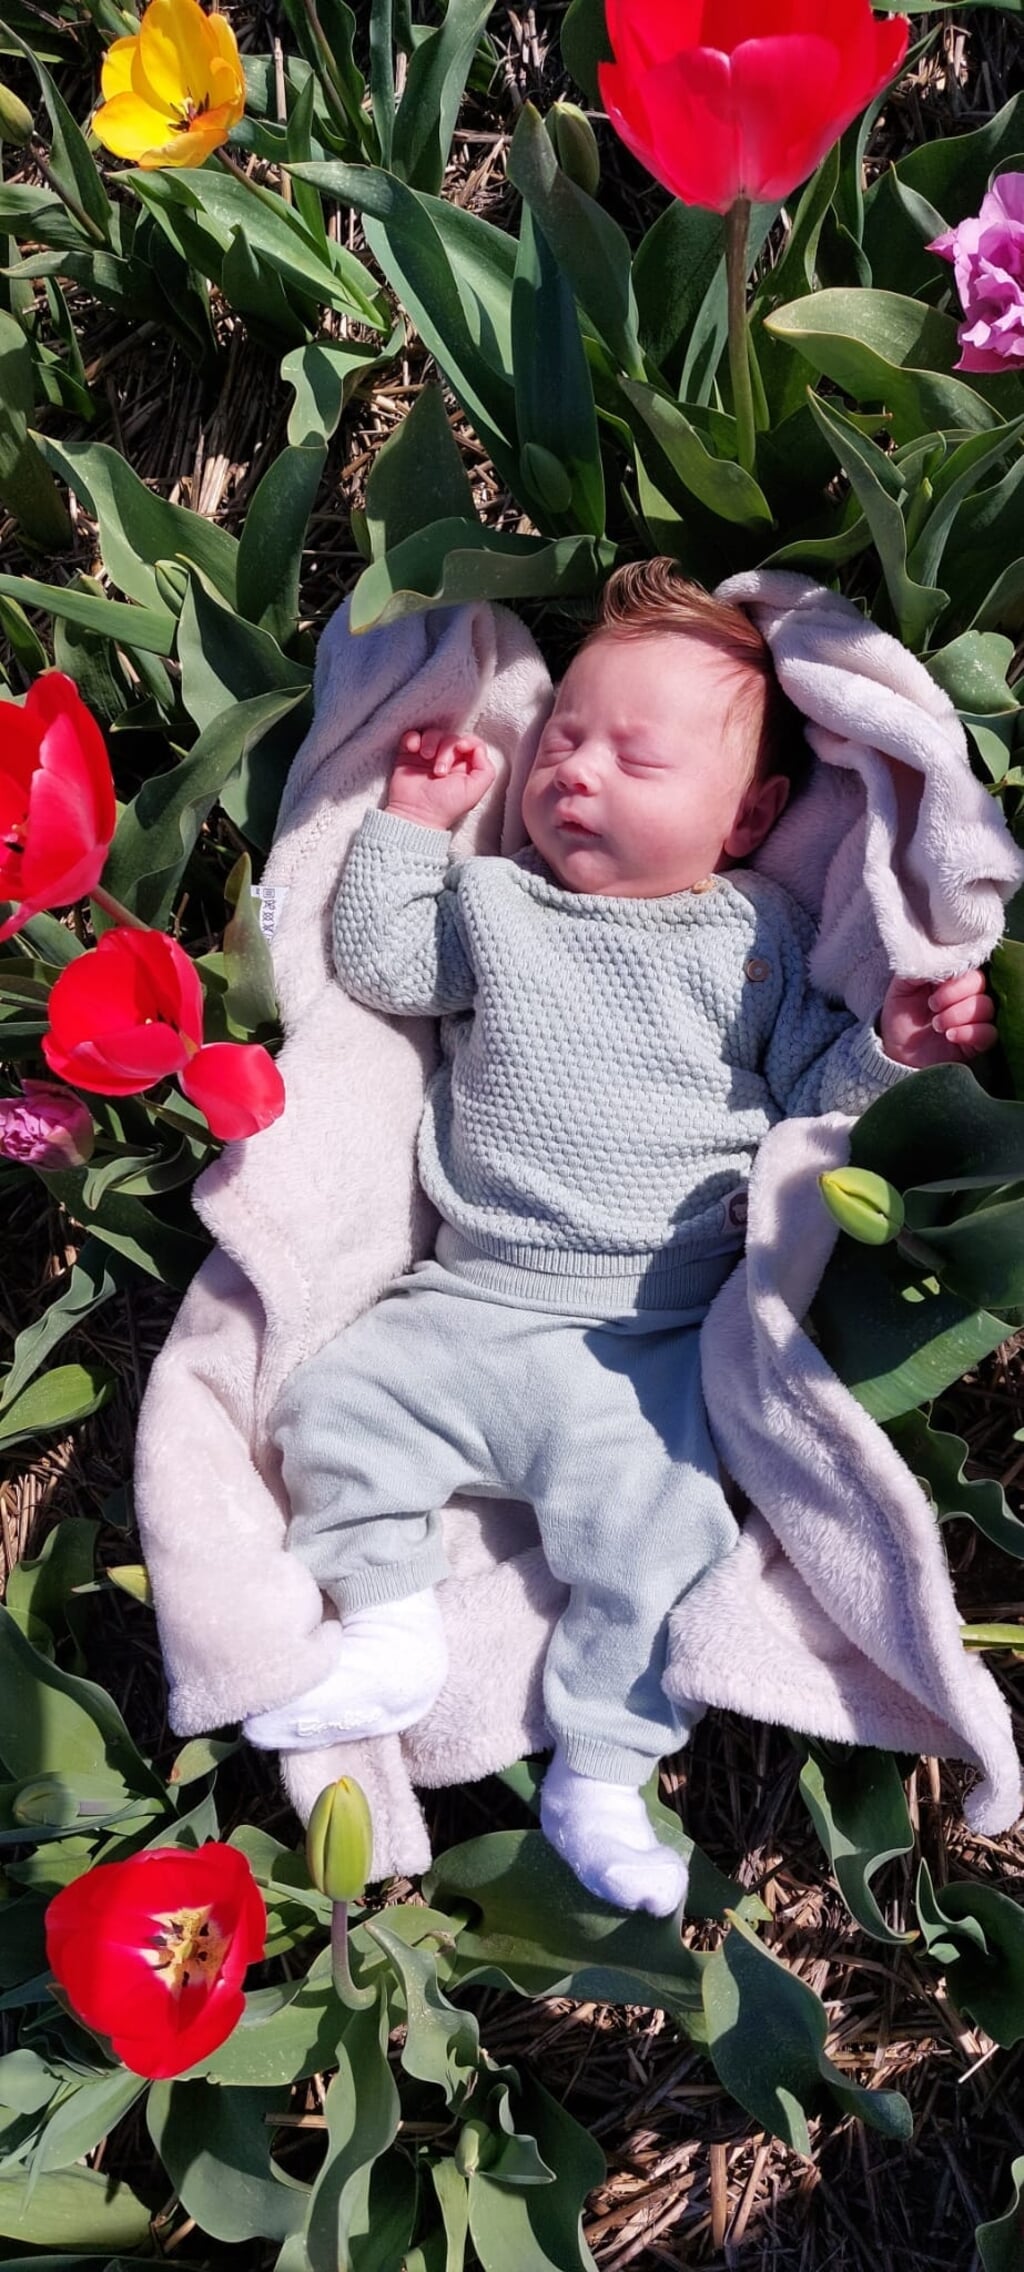 n Jelena deelde deze schattige foto: ,,Lentefoto van onze Eize in het tulpenveld.''